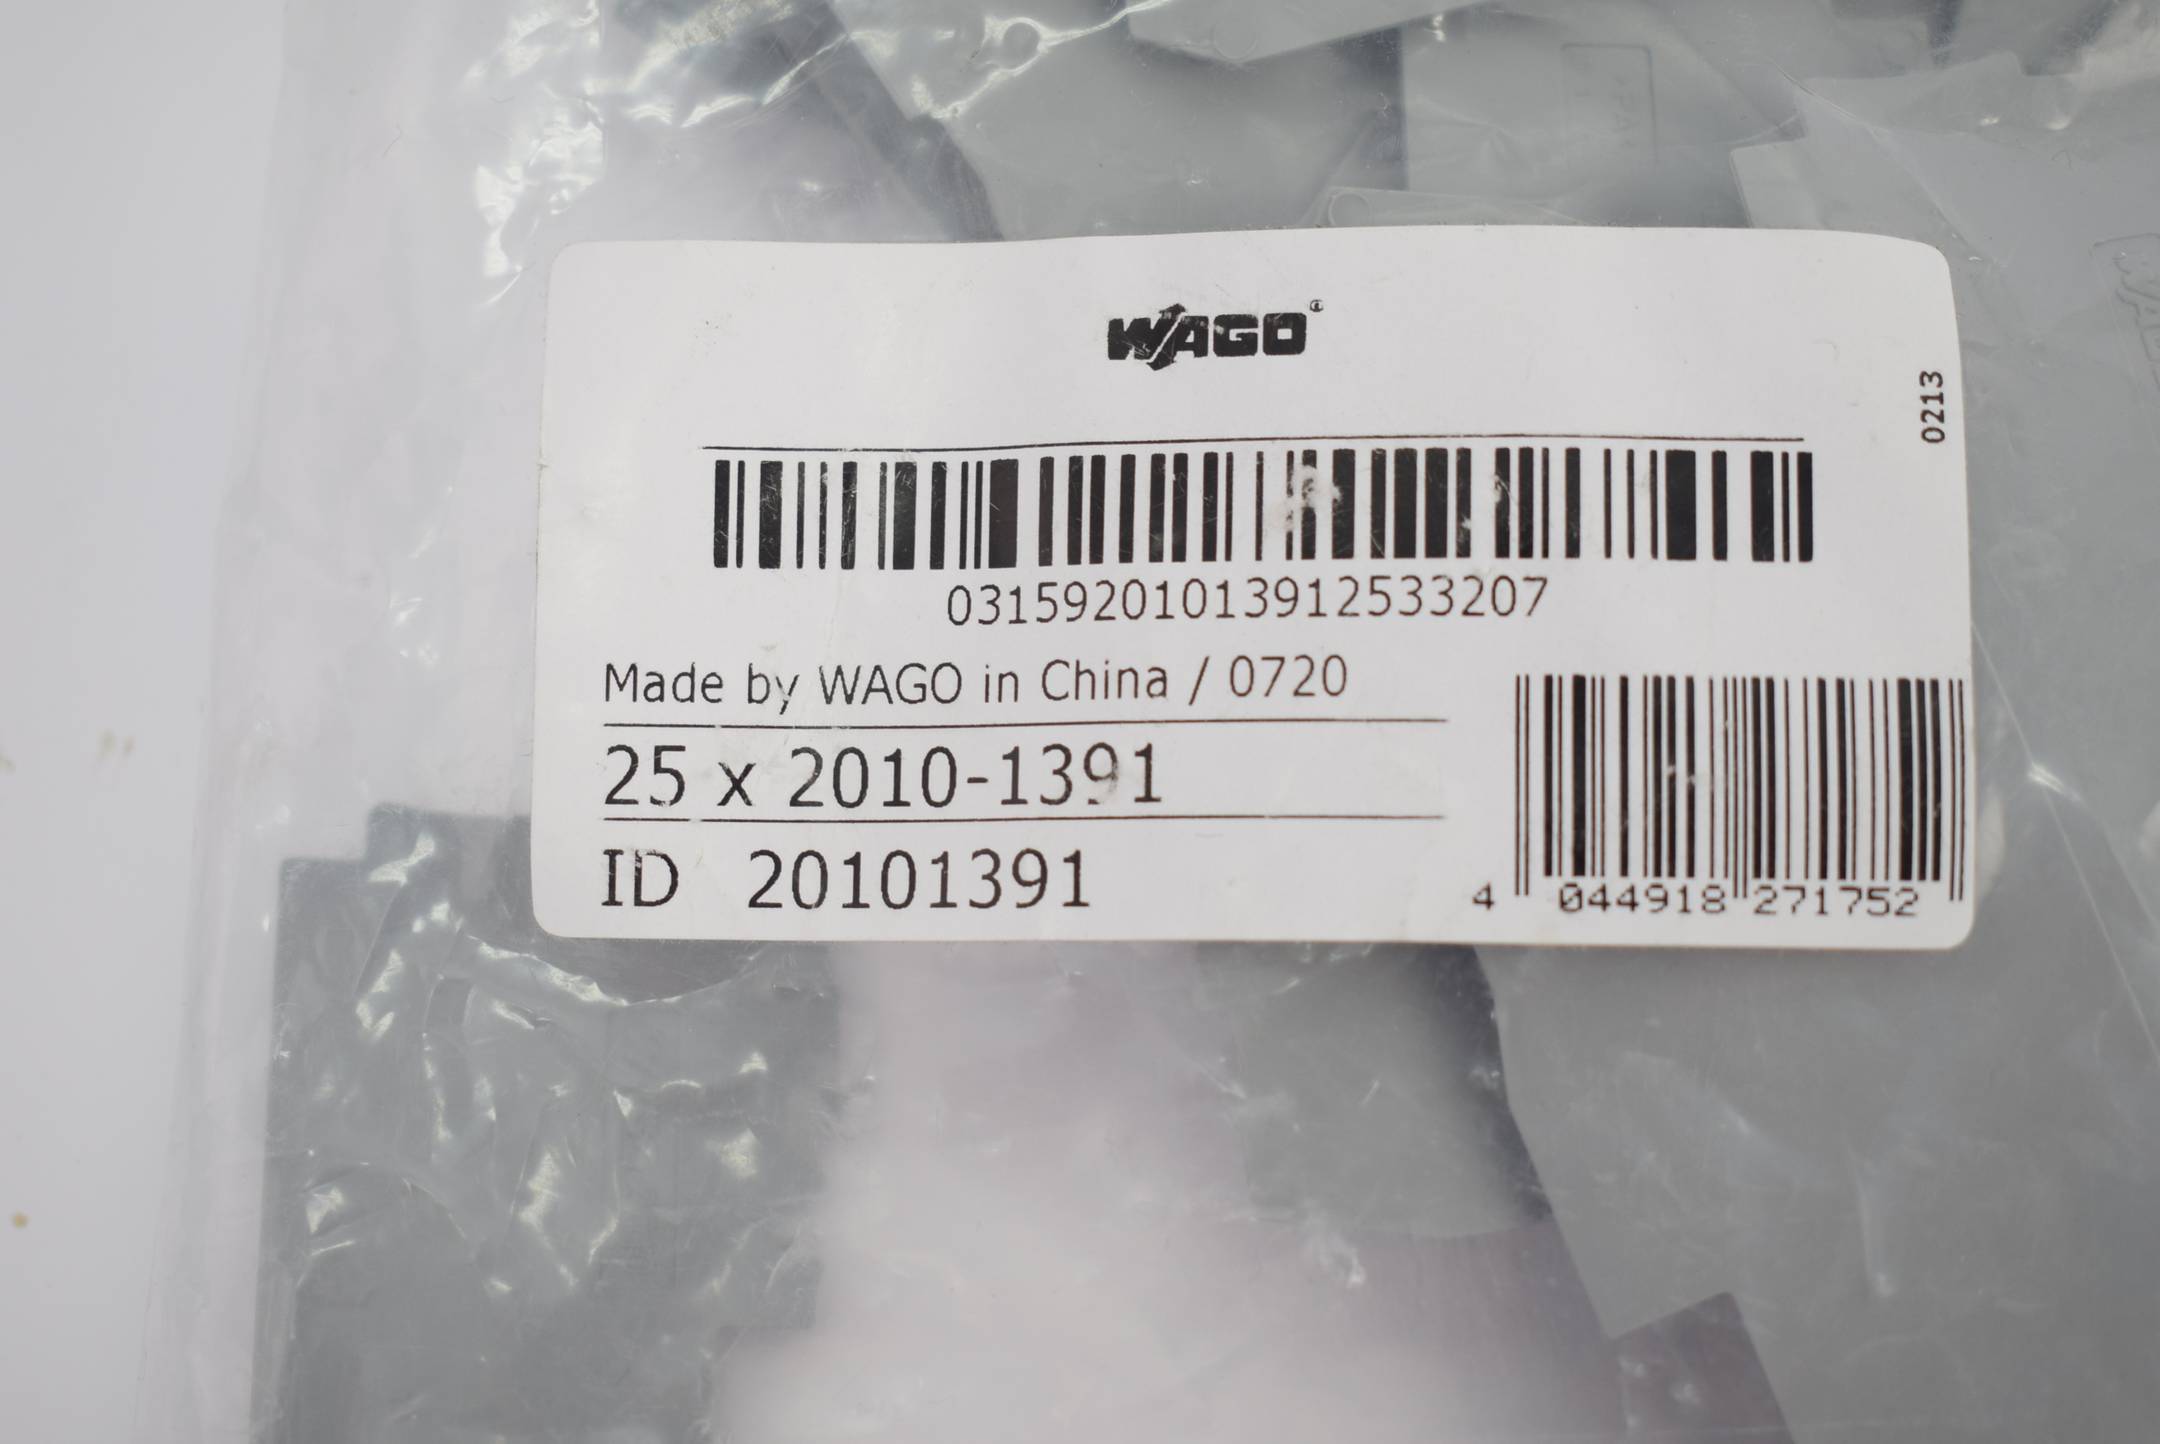 24x WAGO Abschlussplatte 2010-1391 ( 20101391 )